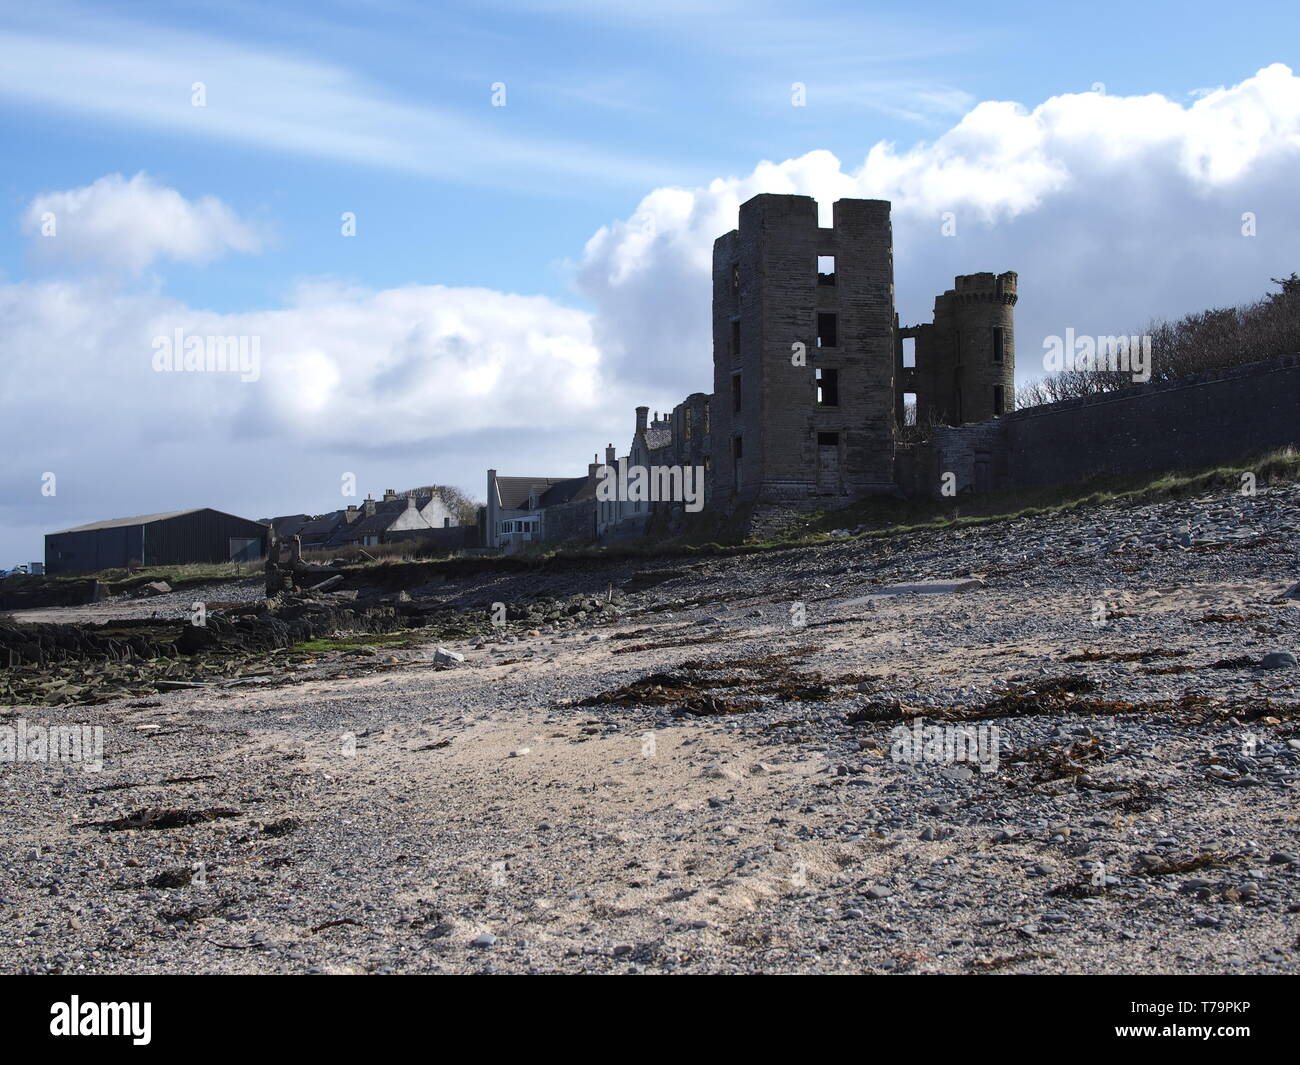 Vue sur la ruine du château de Thurso depuis l'estran vers les bâtiments de ferme en arrière-plan dans les Highlands écossais de Thurso East, Royaume-Uni Banque D'Images